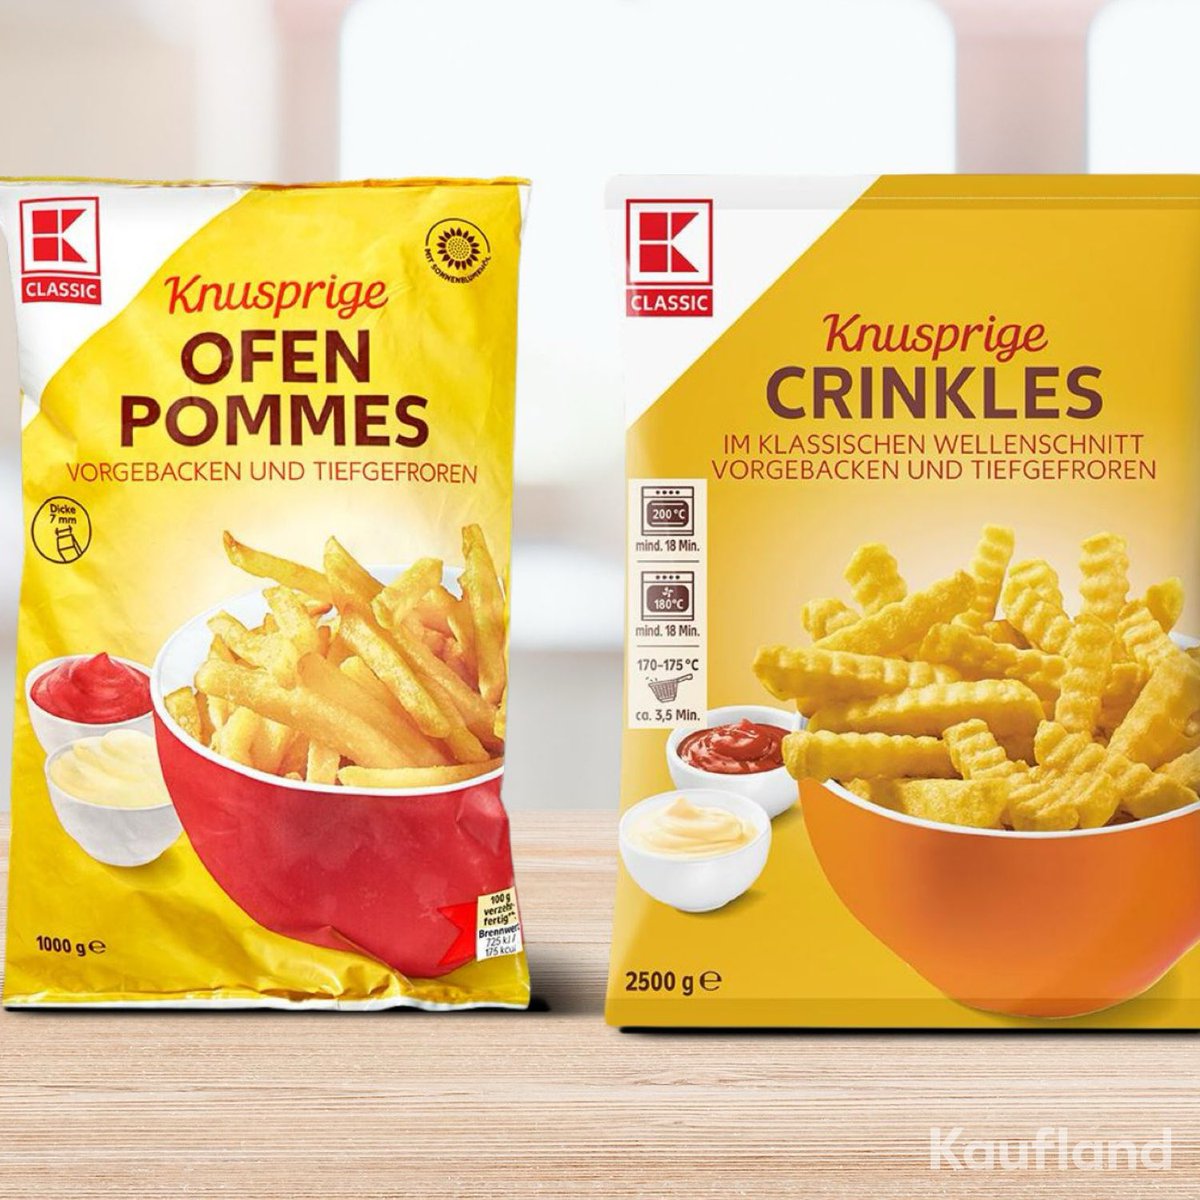 Doppelte Auszeichnung für K-Classic Pommes! 🍟 Bei #Öko-Test: Knusprige Ofen #Pommes 'gut' für Inhaltsstoffe. Bei #StiftungWarentest: Knusprige Crinkles 'gut (2,1)' und Preis-Qualitäts-Sieger. Qualität trifft Geschmack!